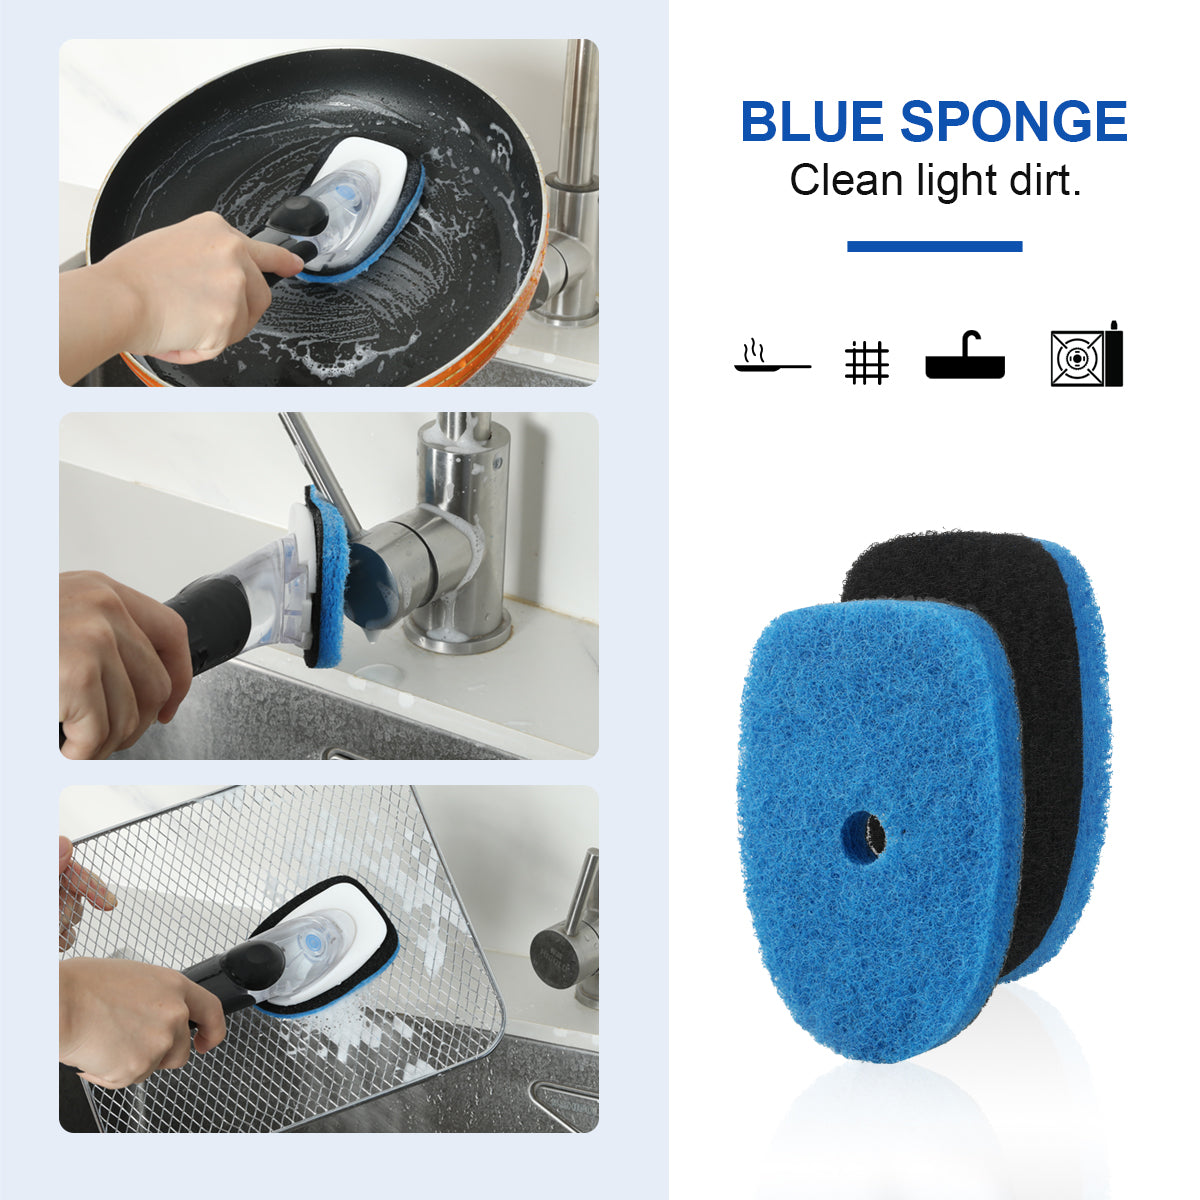 OXO Good Grips Soap Dispensing Dish Sponge Refills - 2 pack